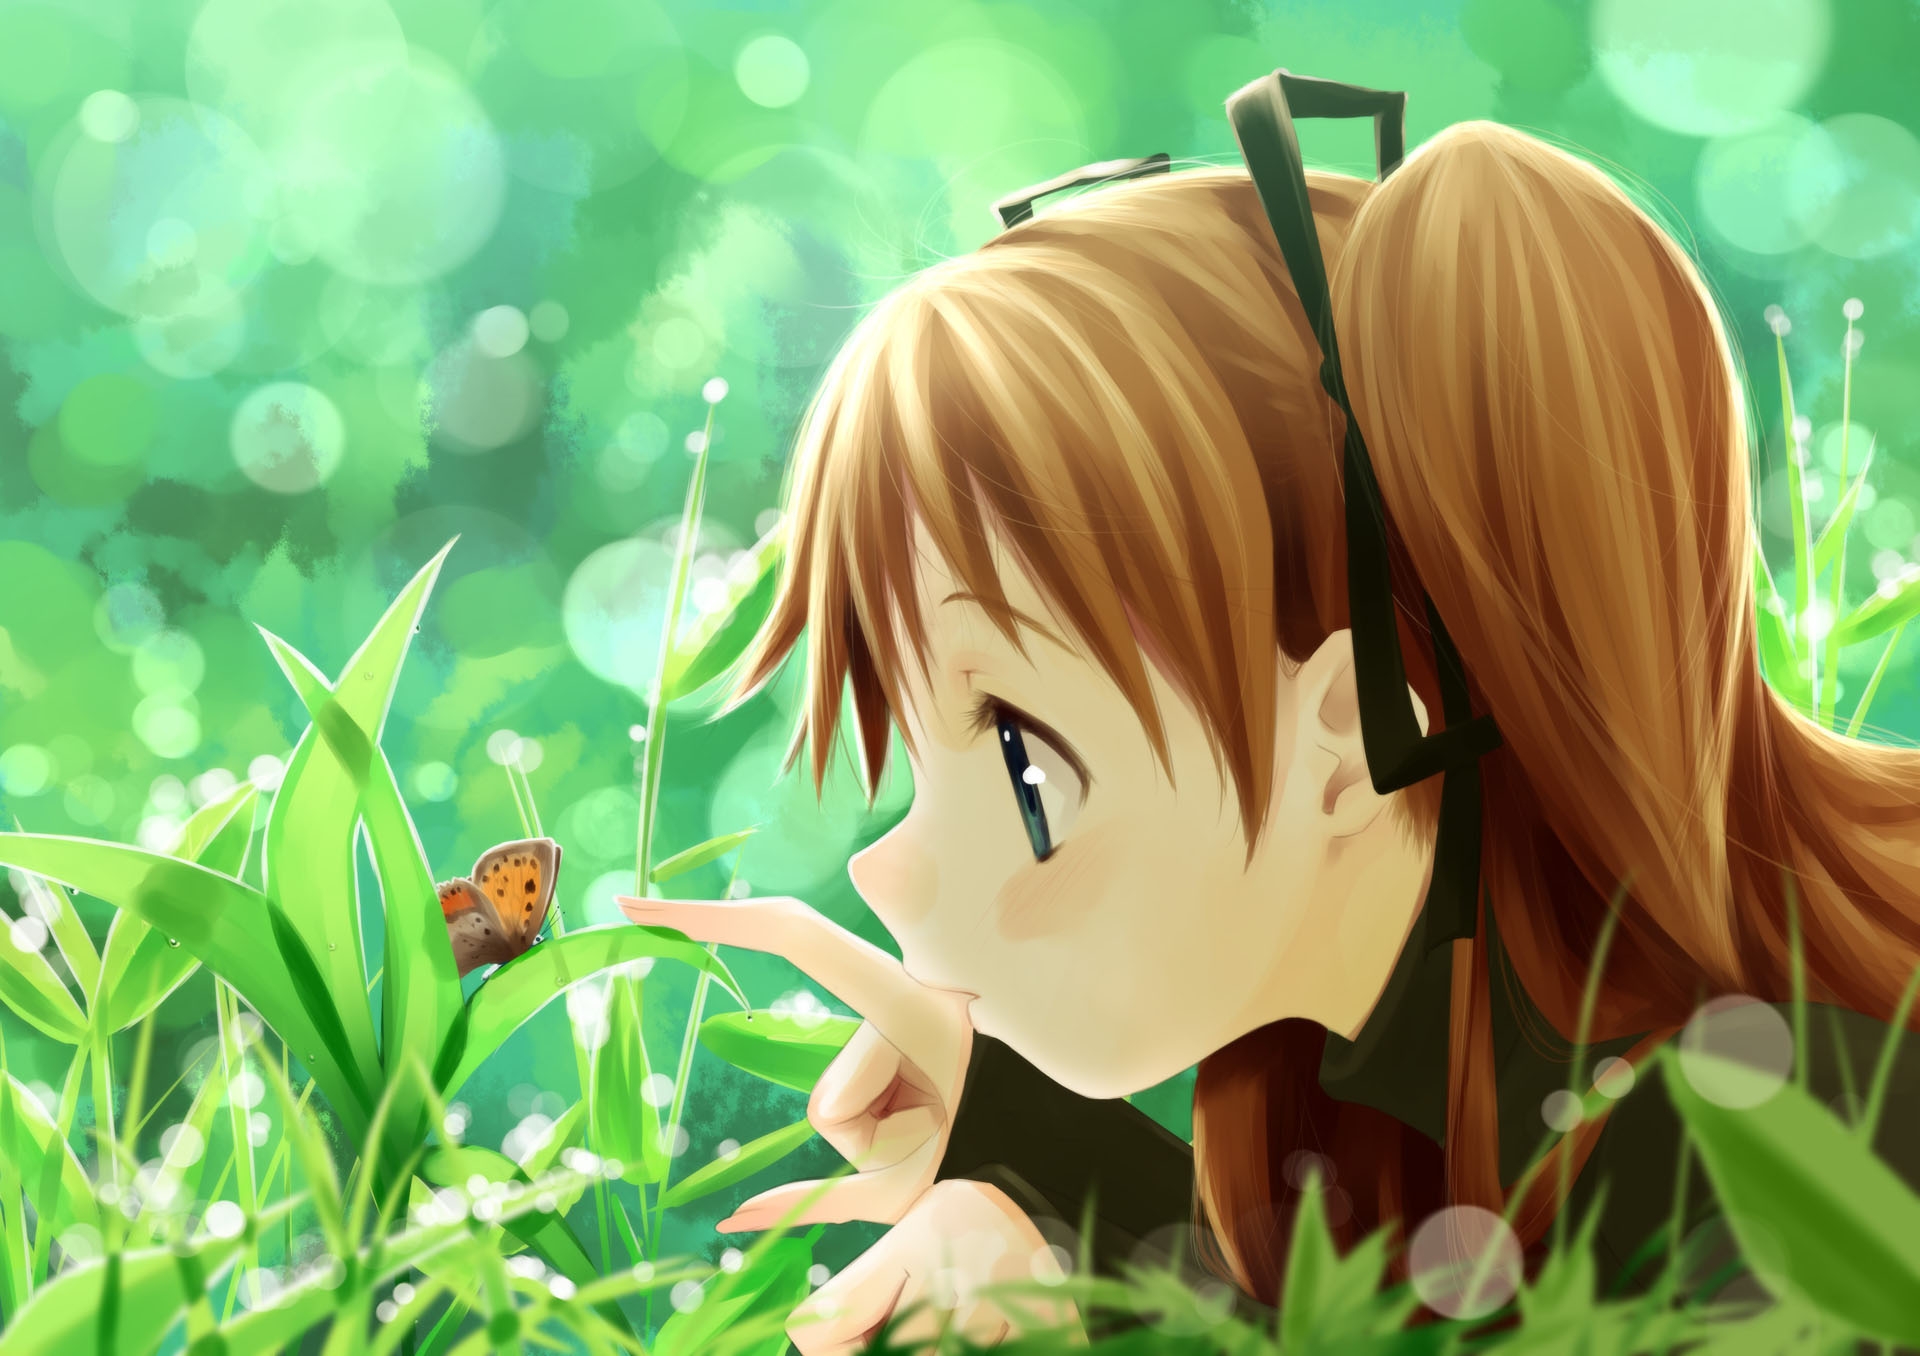 Descarga gratuita de fondo de pantalla para móvil de Naturaleza, Planta, Mariposa, Niña, Muchacha, Anime.